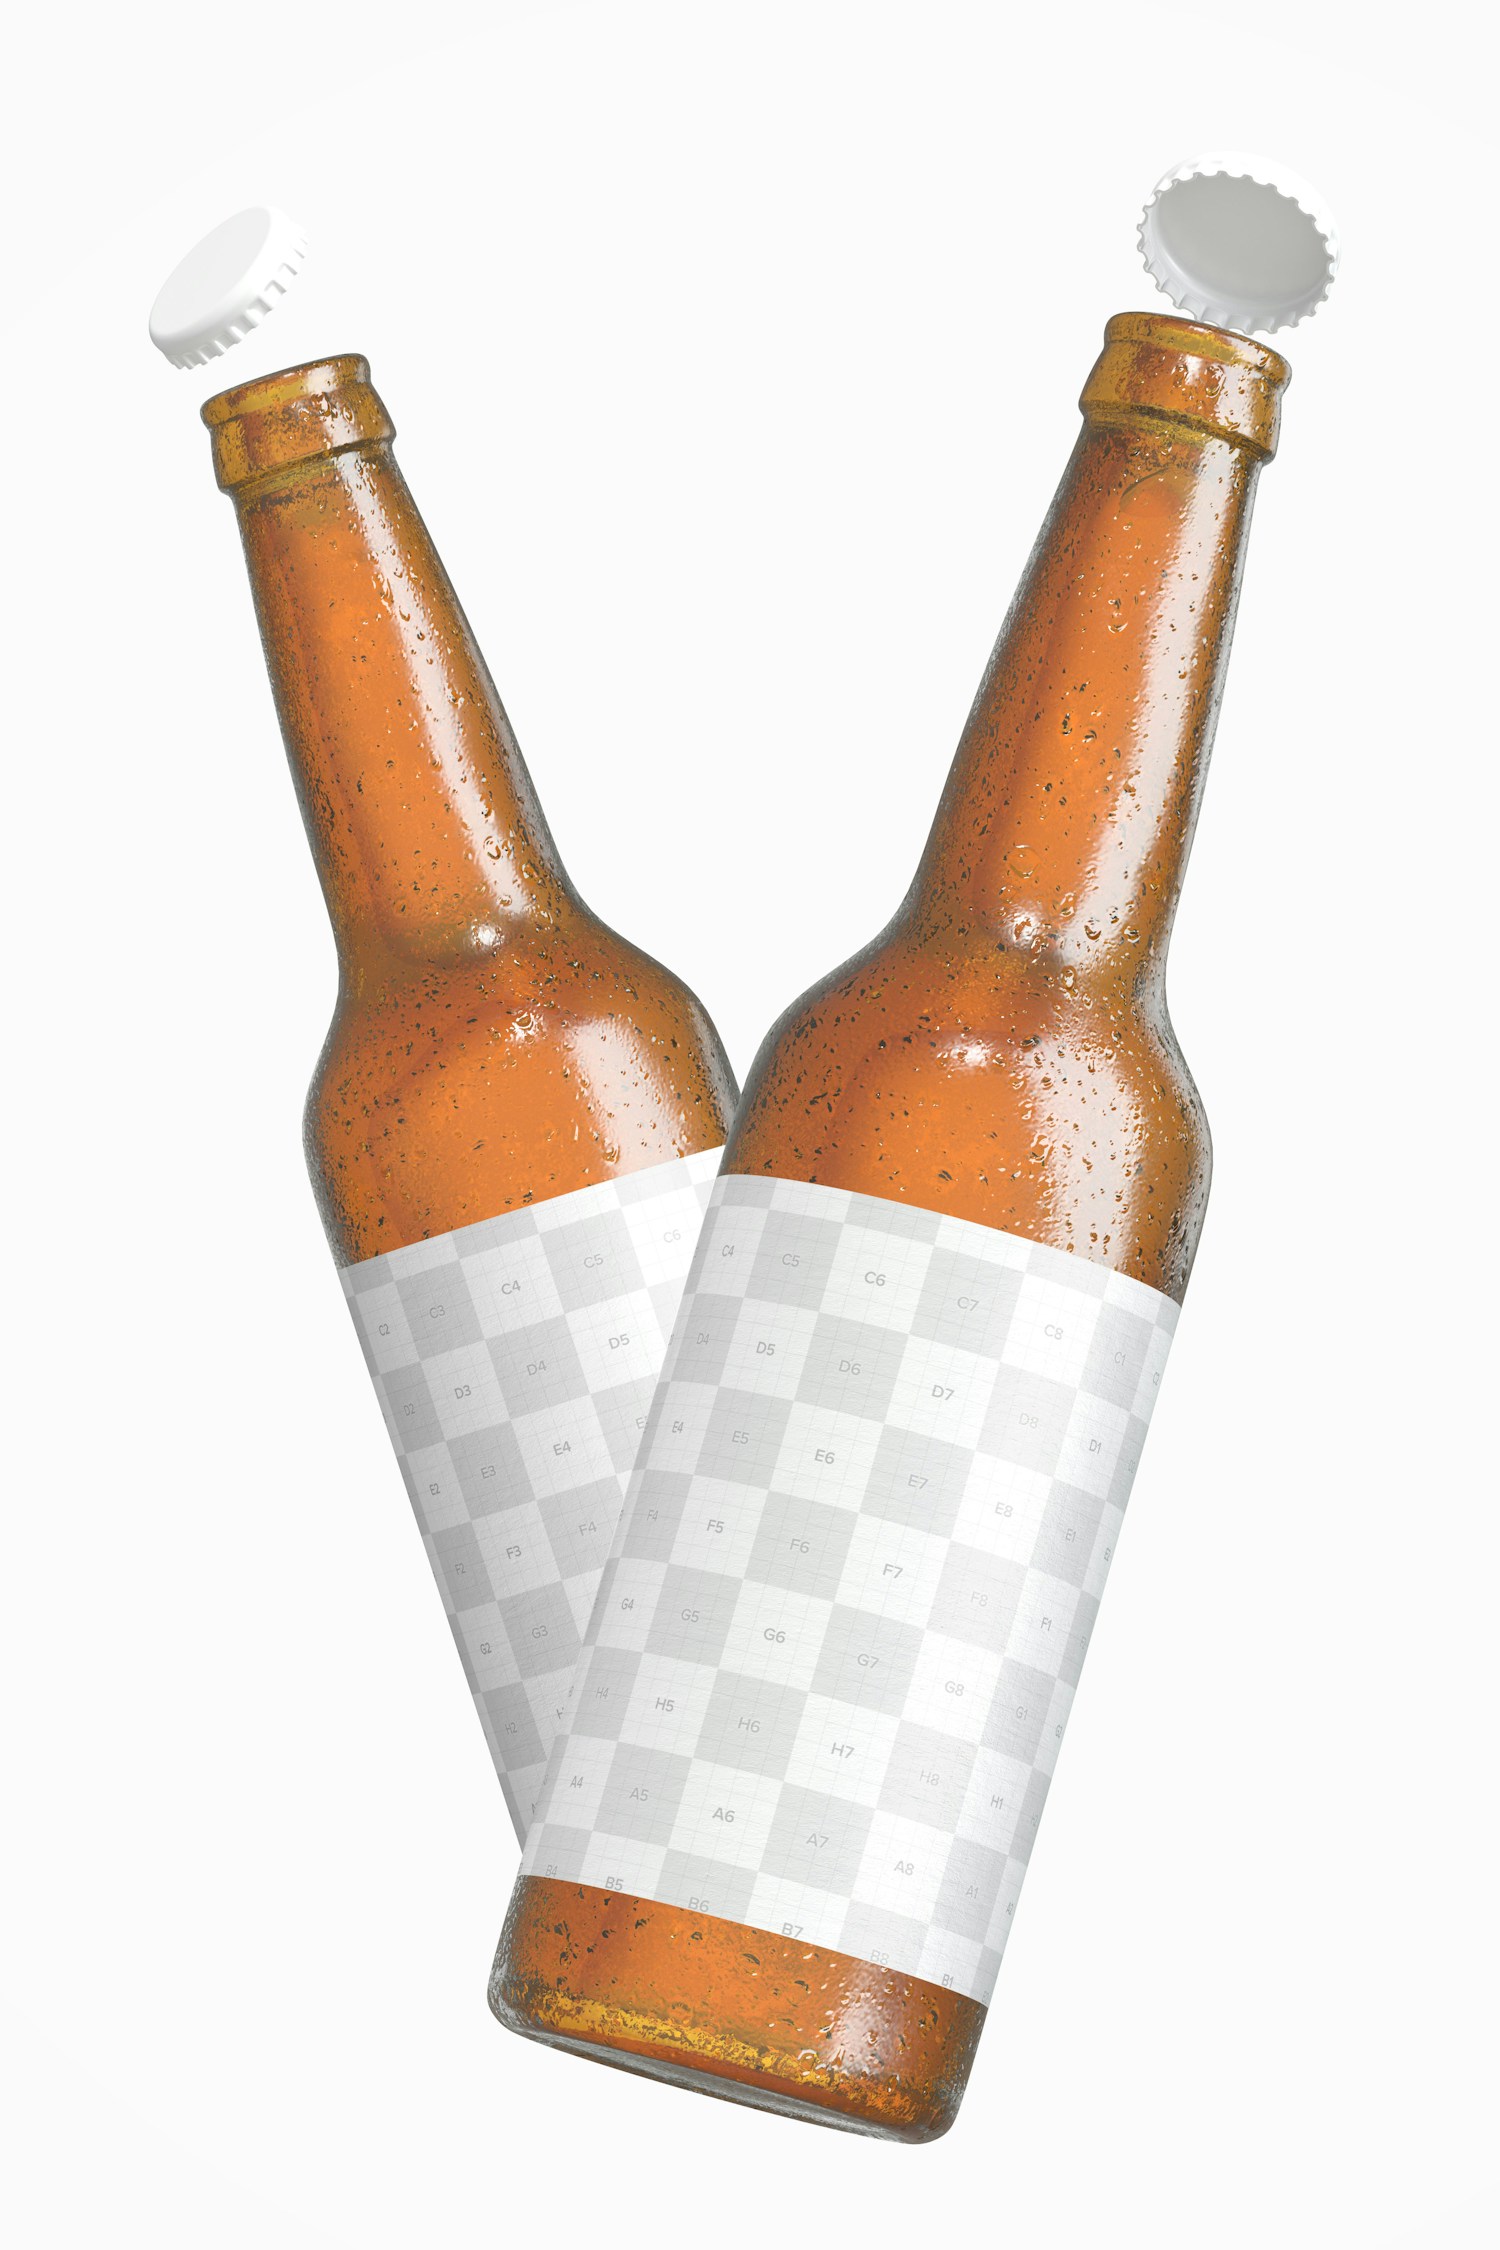 Beer Bottles Mockup, Floating